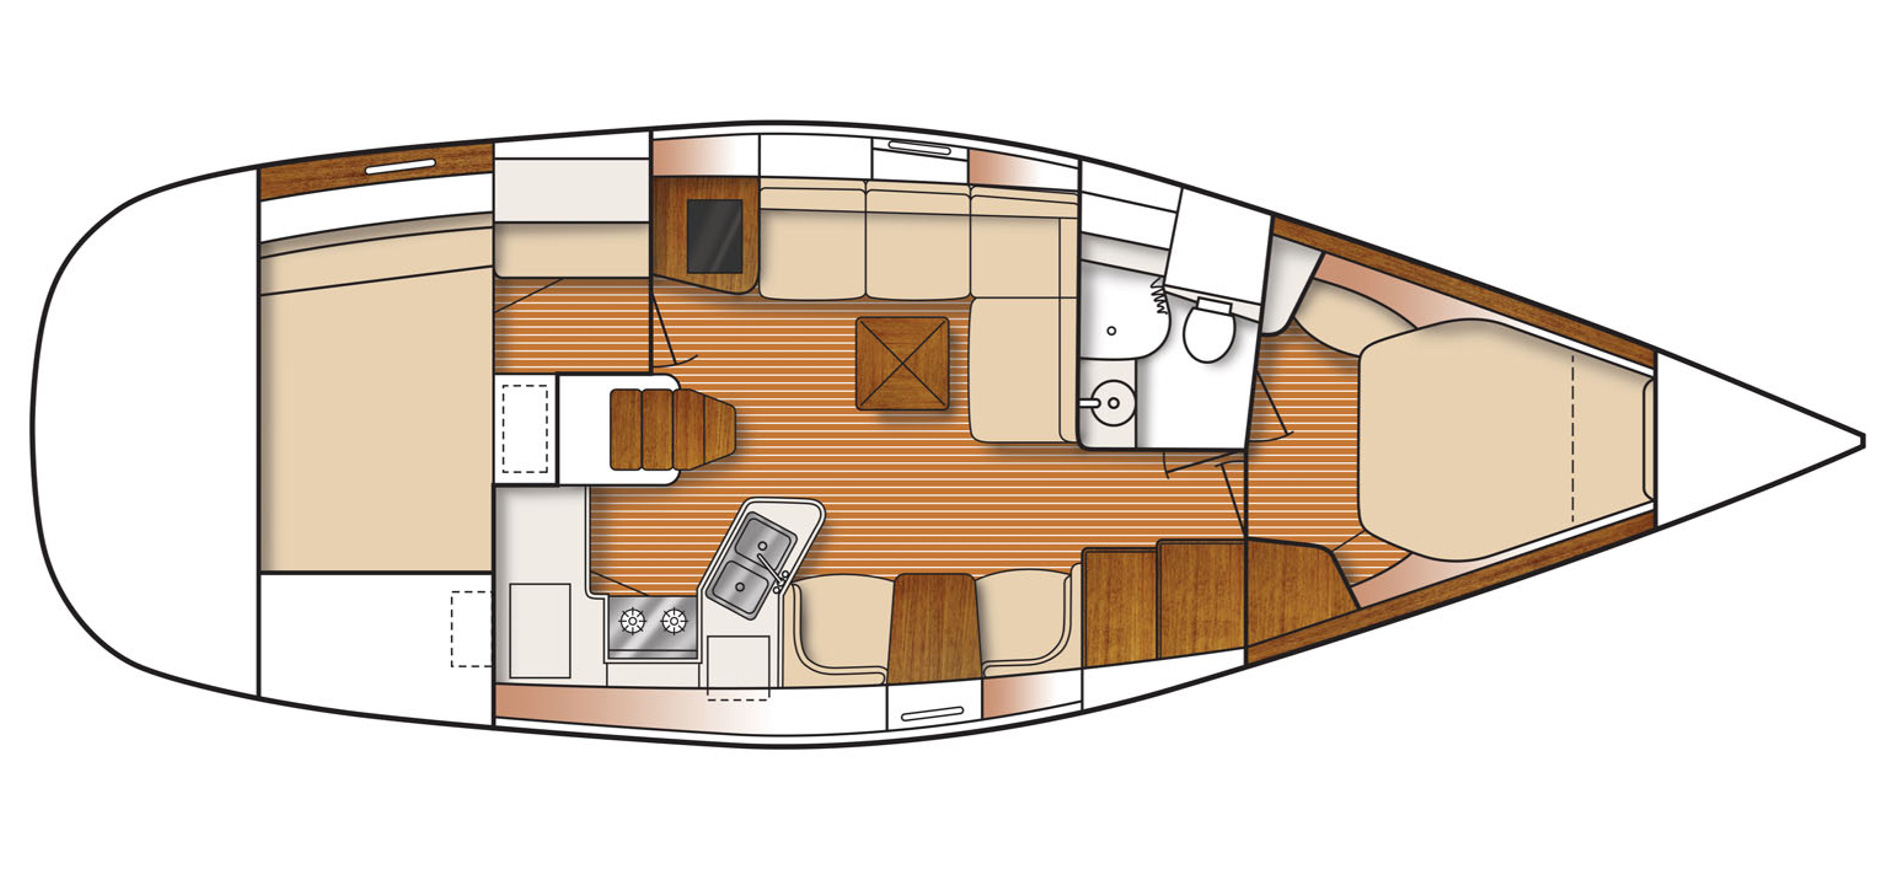 Catalina 385 layout